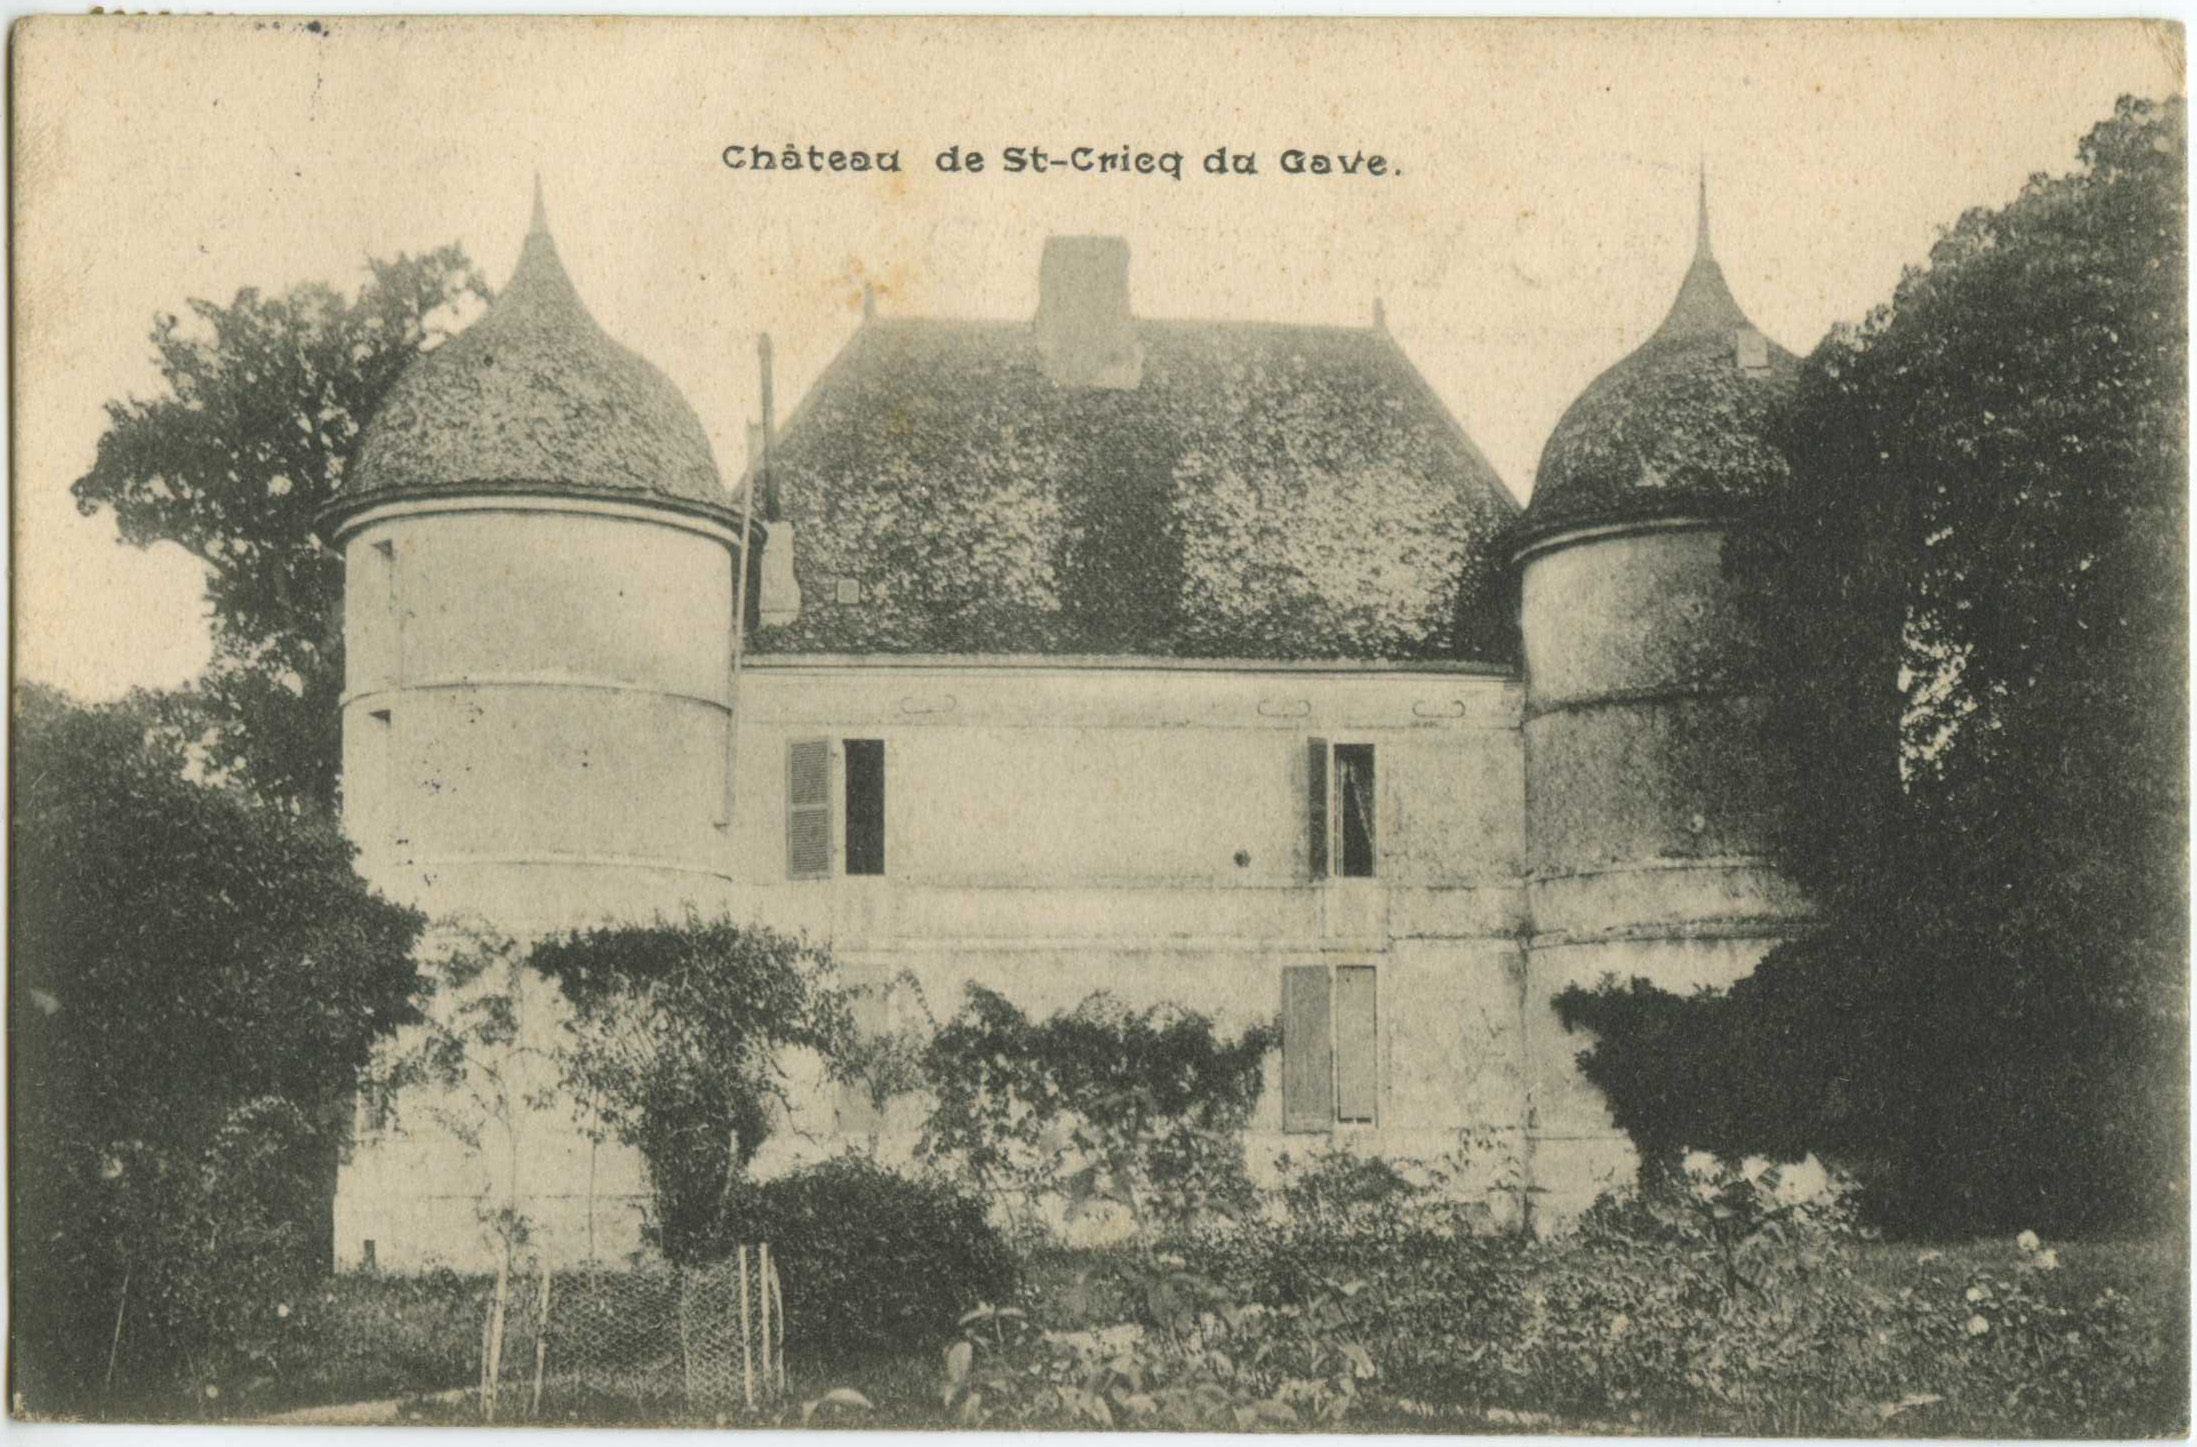 Saint-Cricq-du-Gave - Château de St-Cricq du Gave